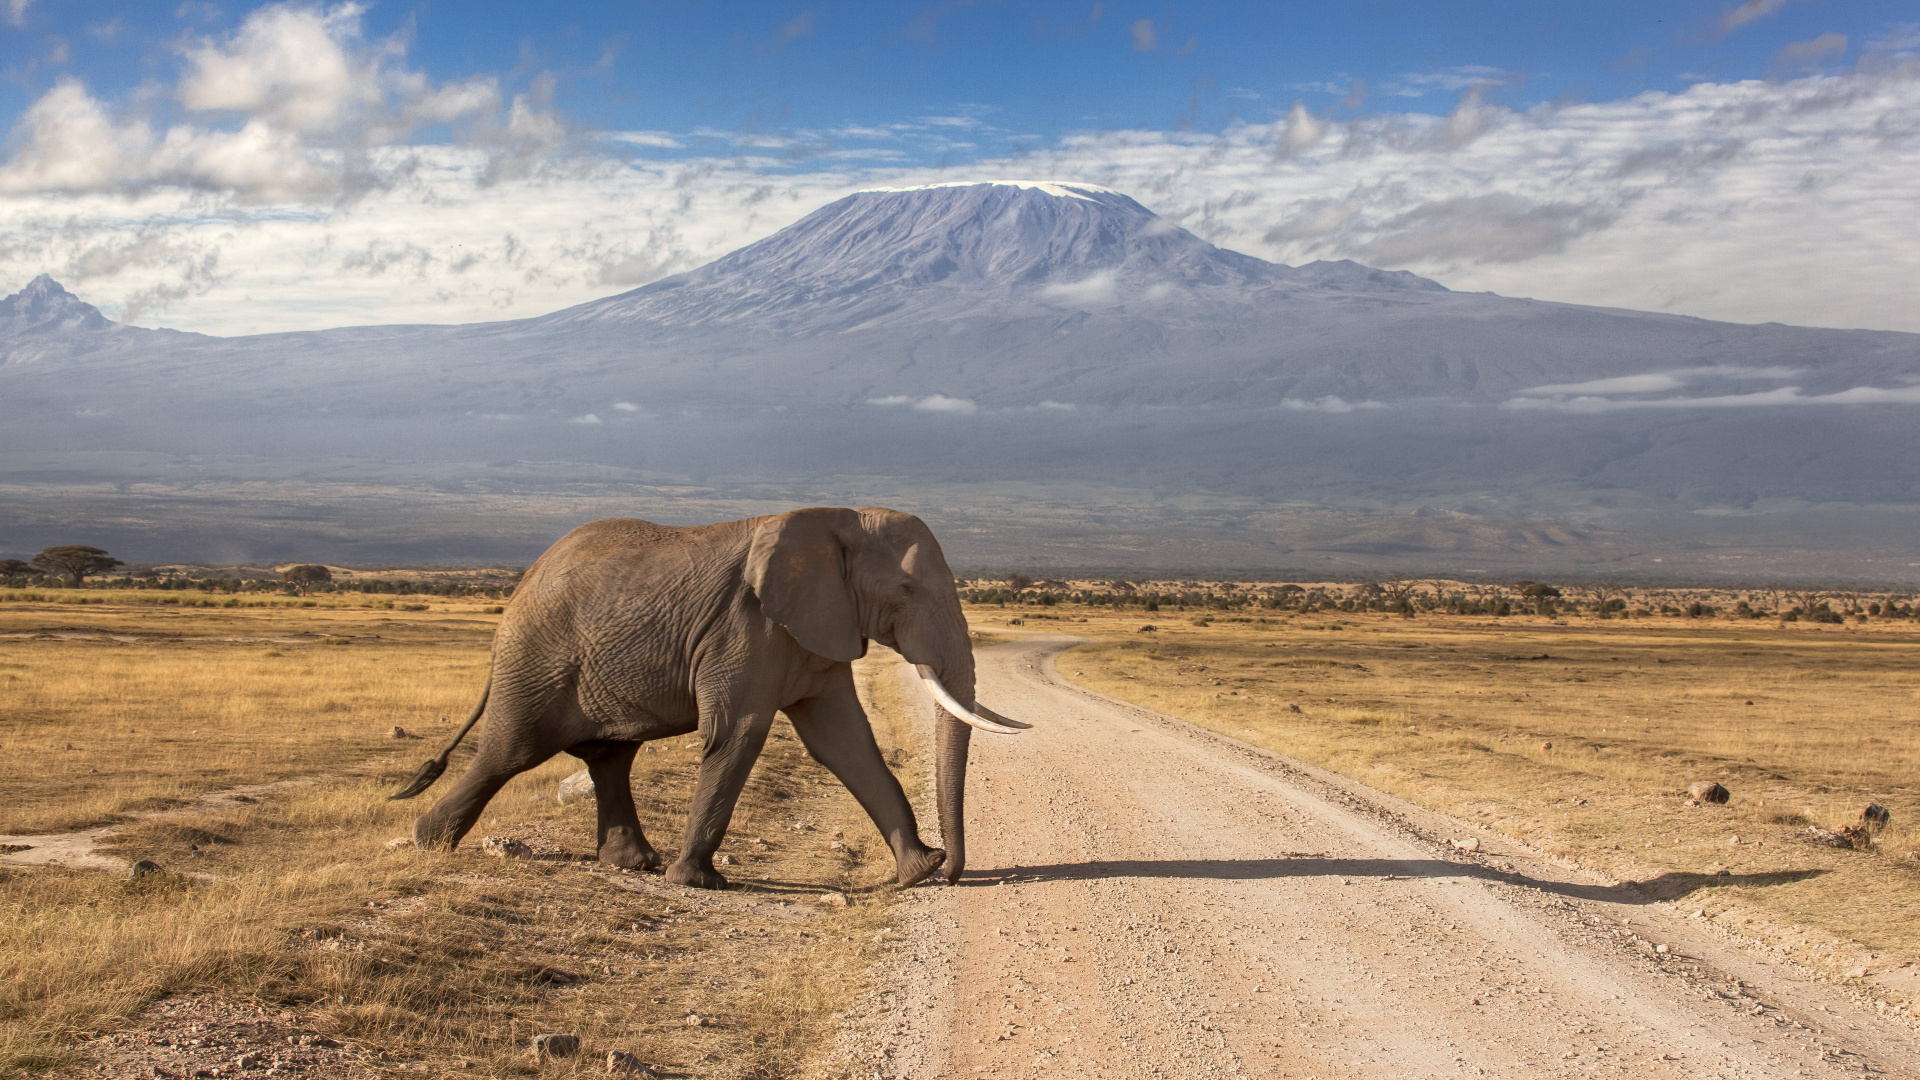 Elefante Caminando en la Carretera Durante el Día. Wallpaper in 1920x1080 Resolution